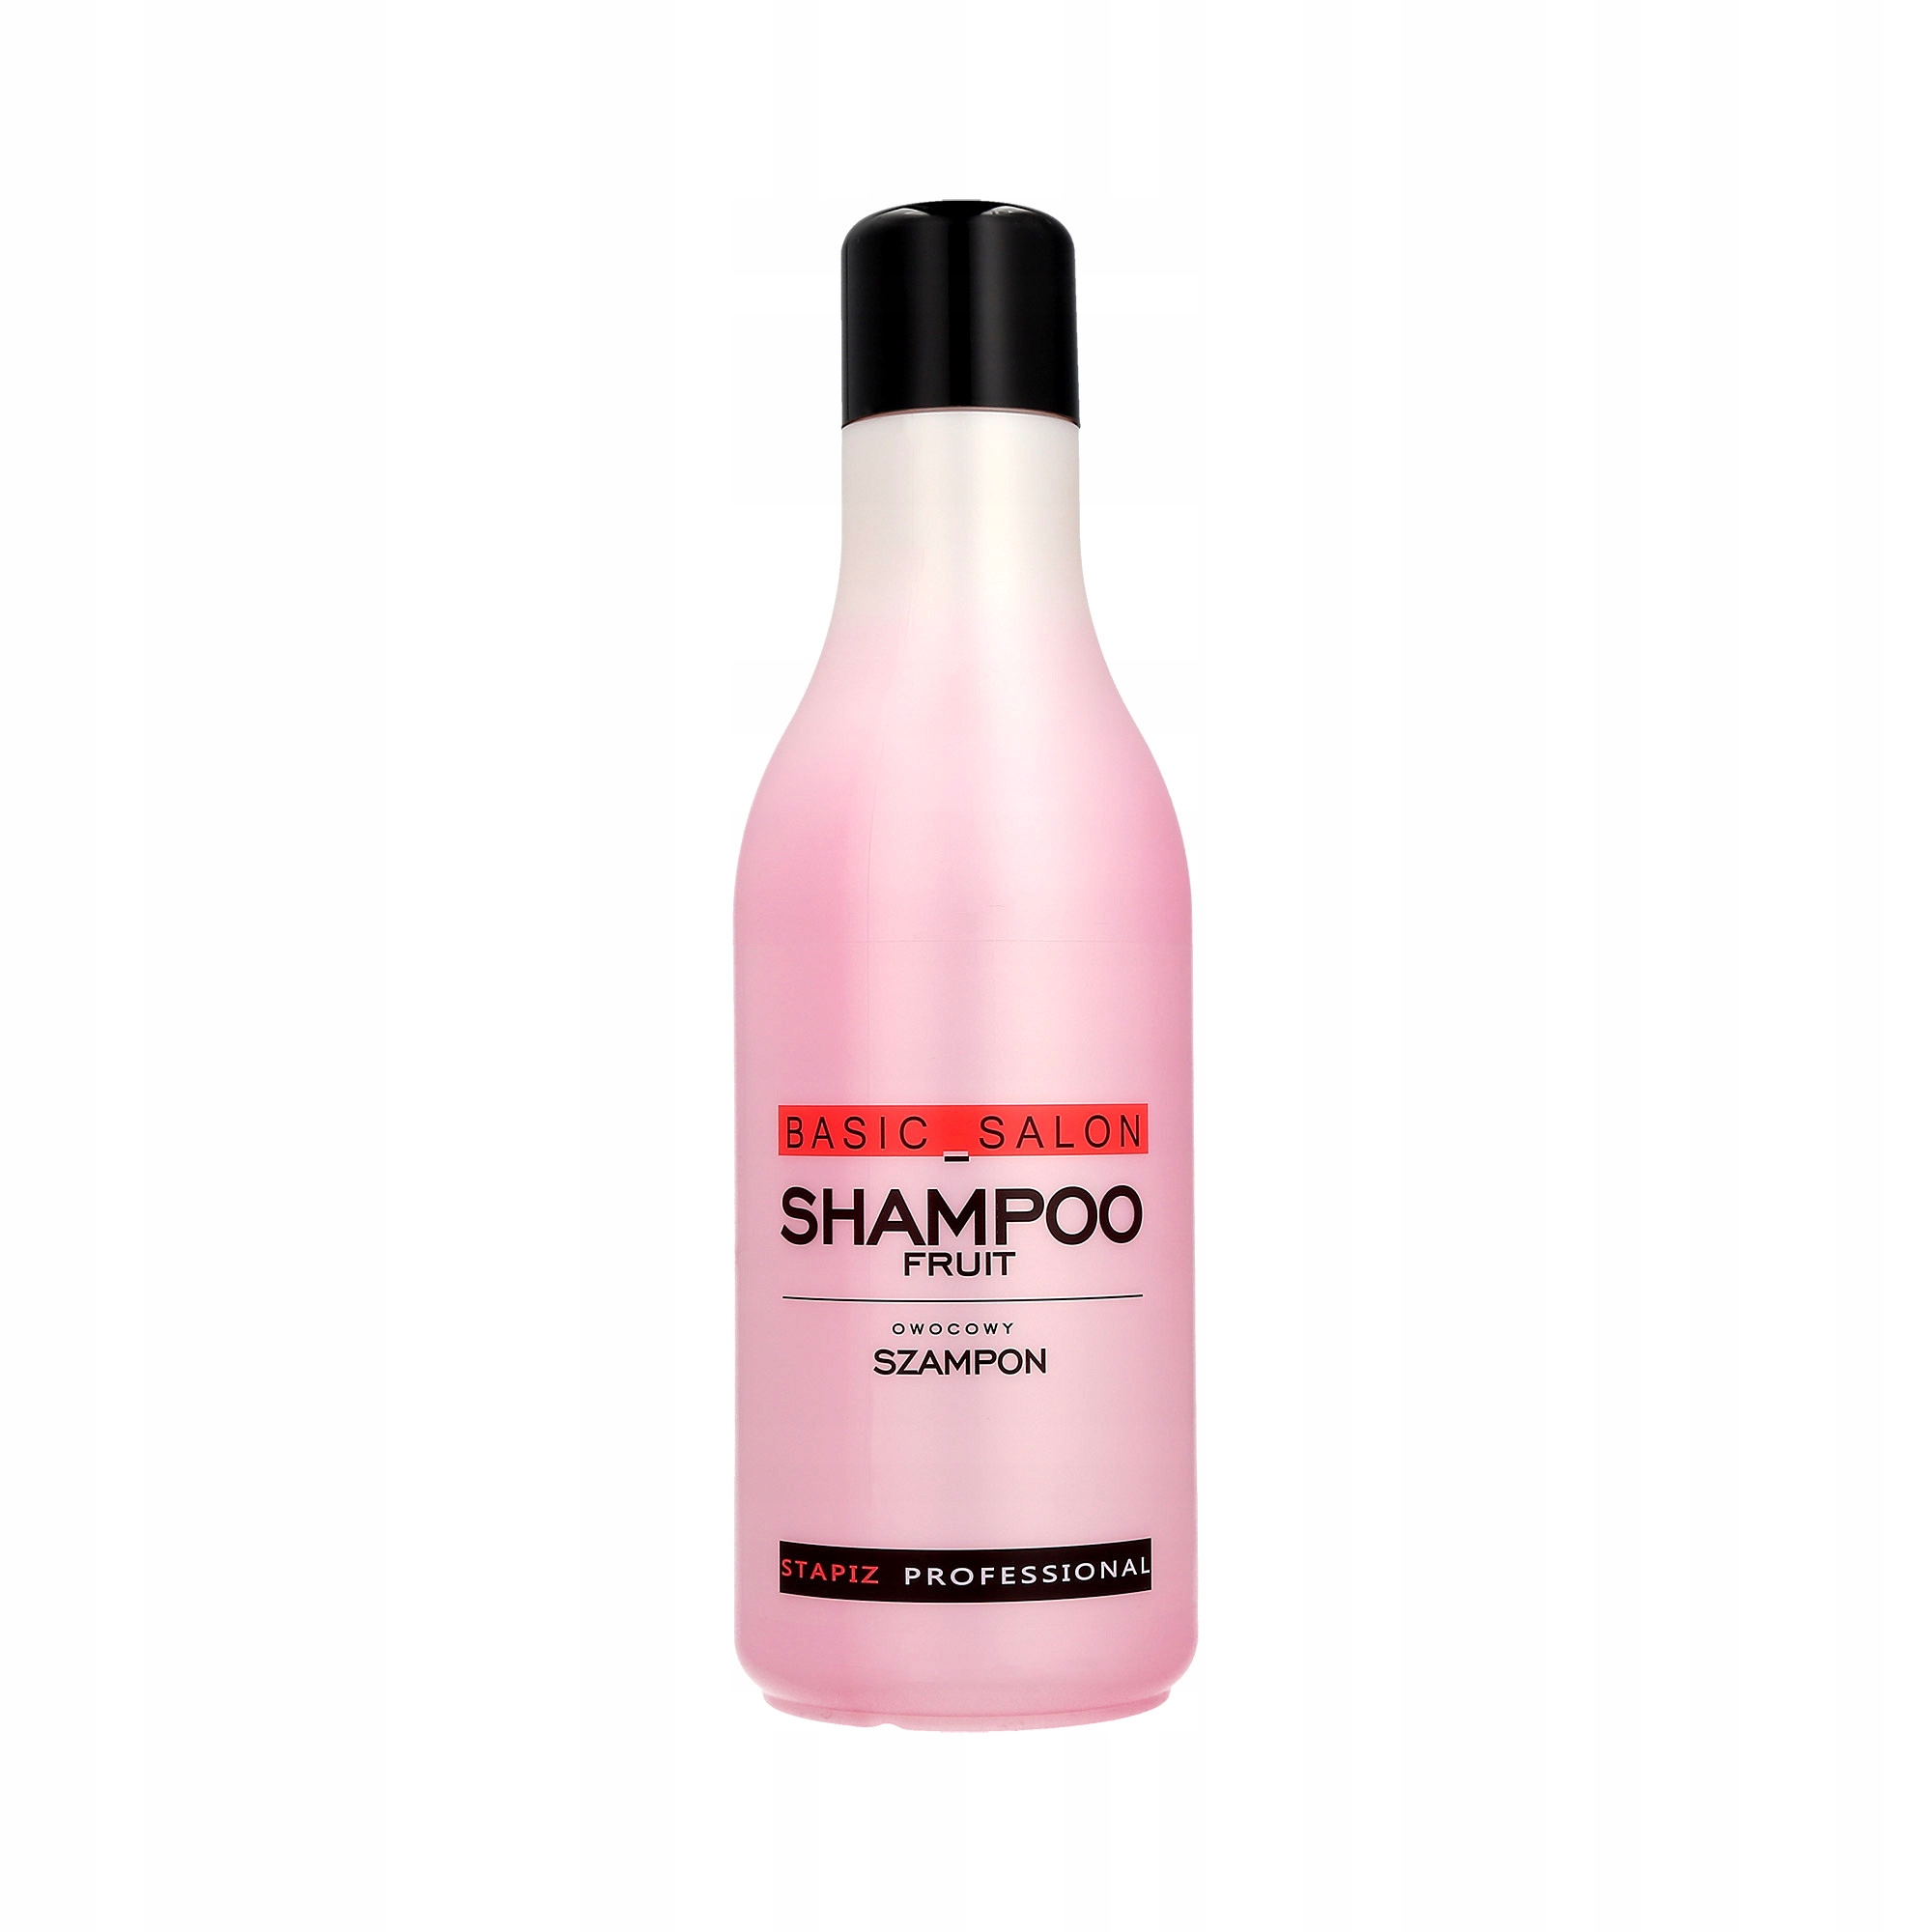 profesjonalny owocowy szampon do włosów